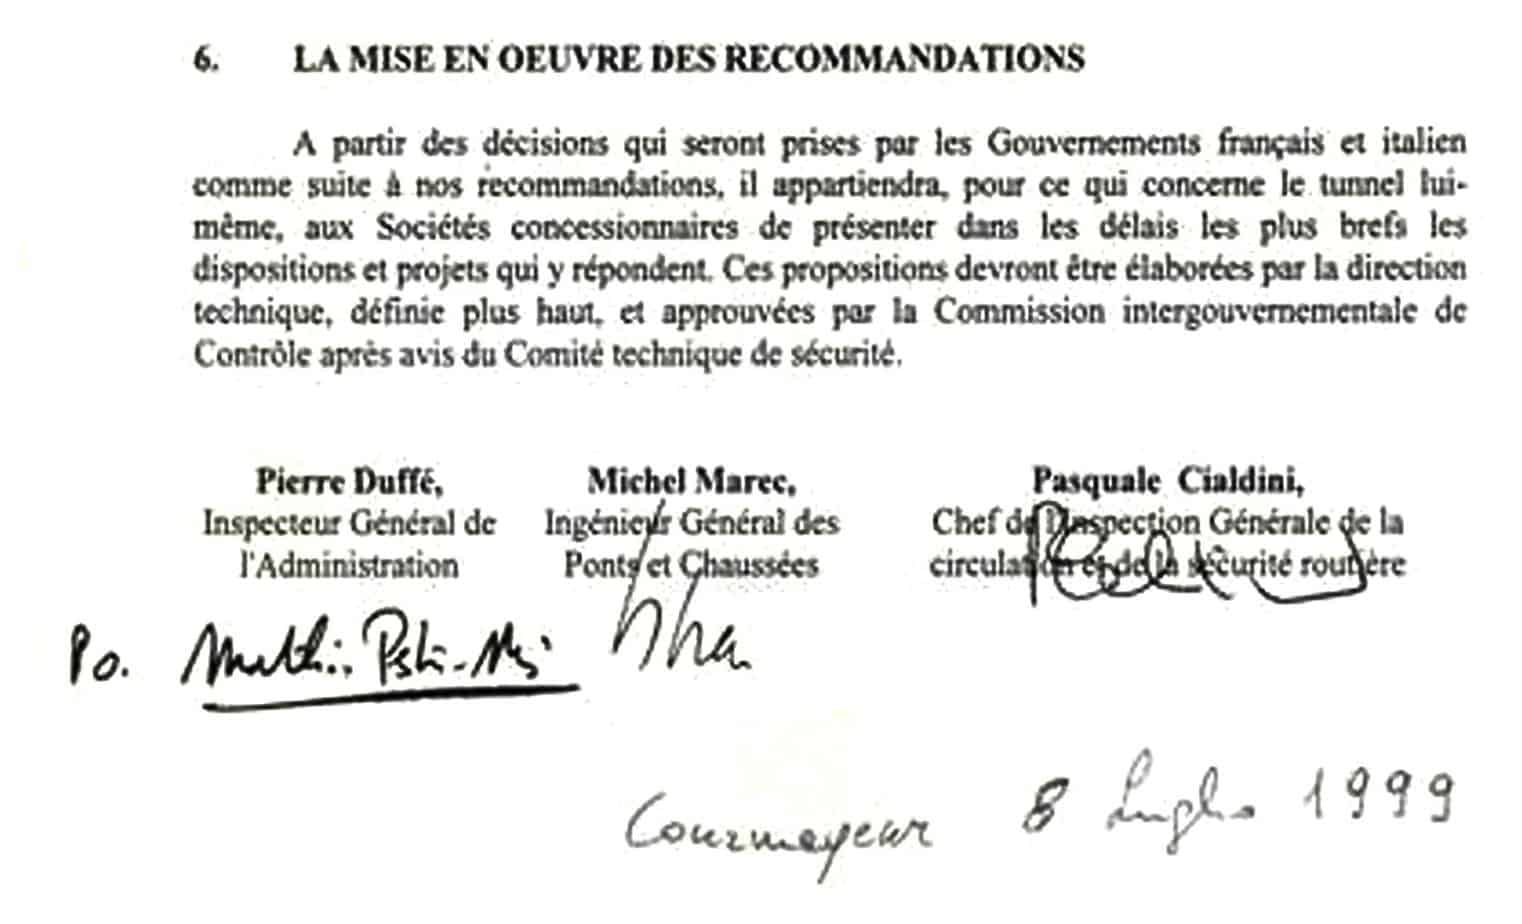 L’ultima pagina del Rapporto Comune della Commissione amministrativa di inchiesta italo-francese Cialdini-Marec sulla catastrofe del 24 Marzo 1999 nel Traforo del Monte Bianco